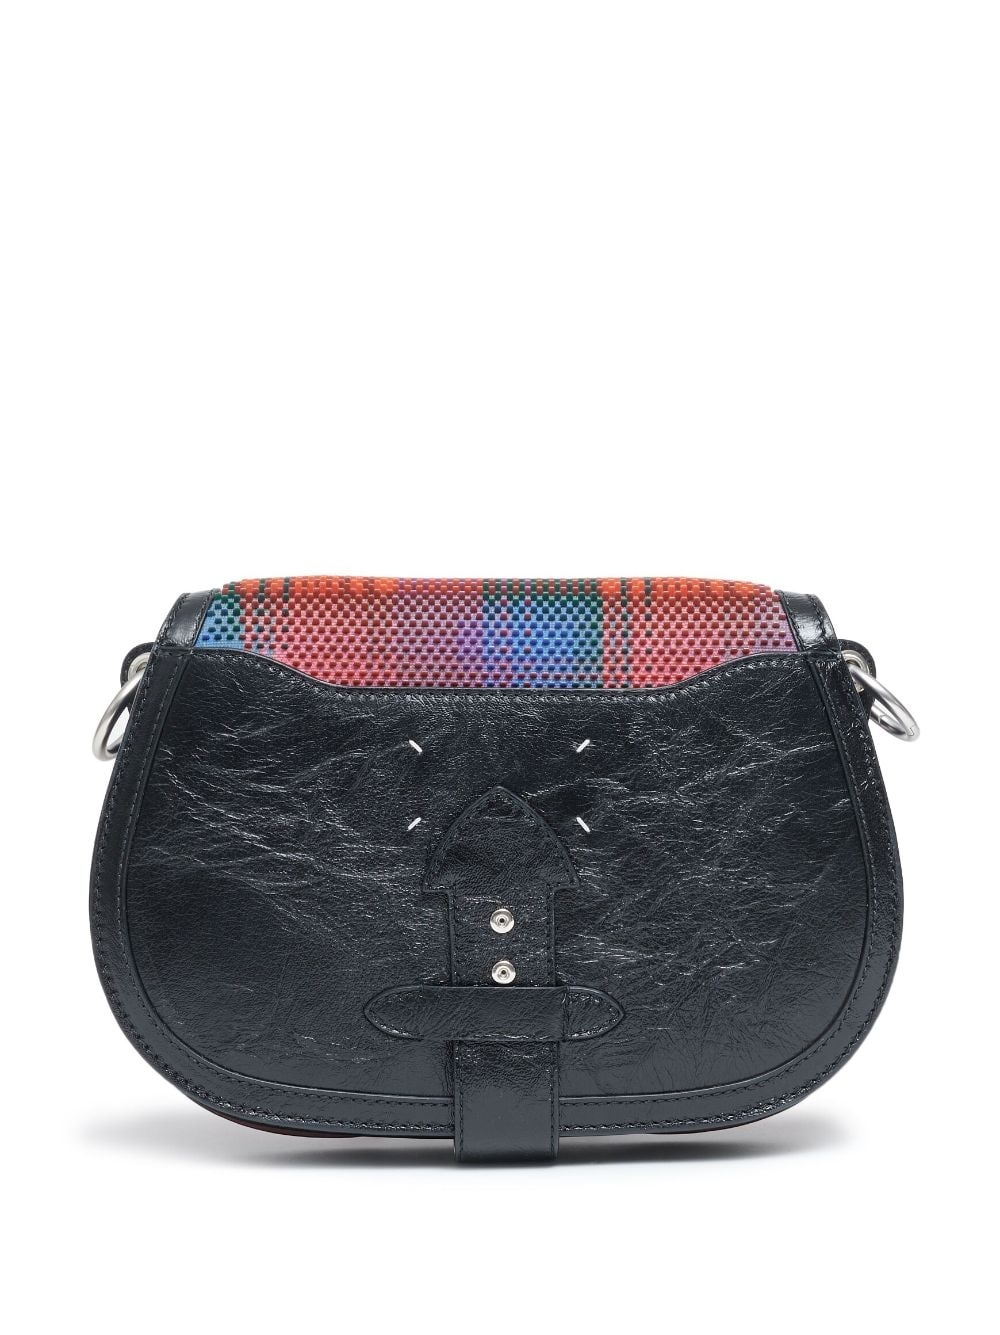 grid-pattern leather shoulder bag - 4